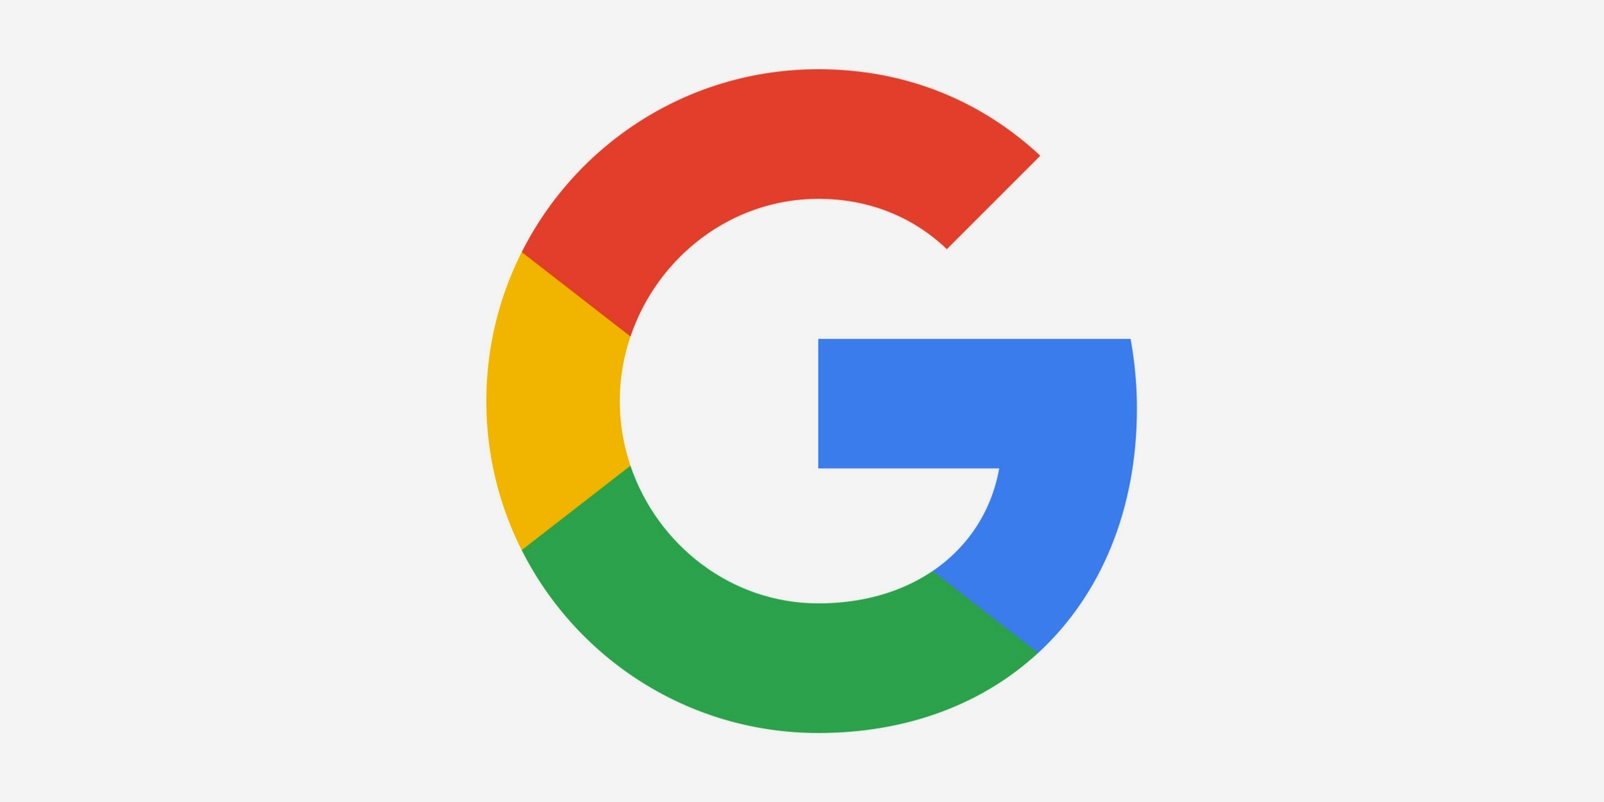 Image Of Google Logo - KibrisPDR